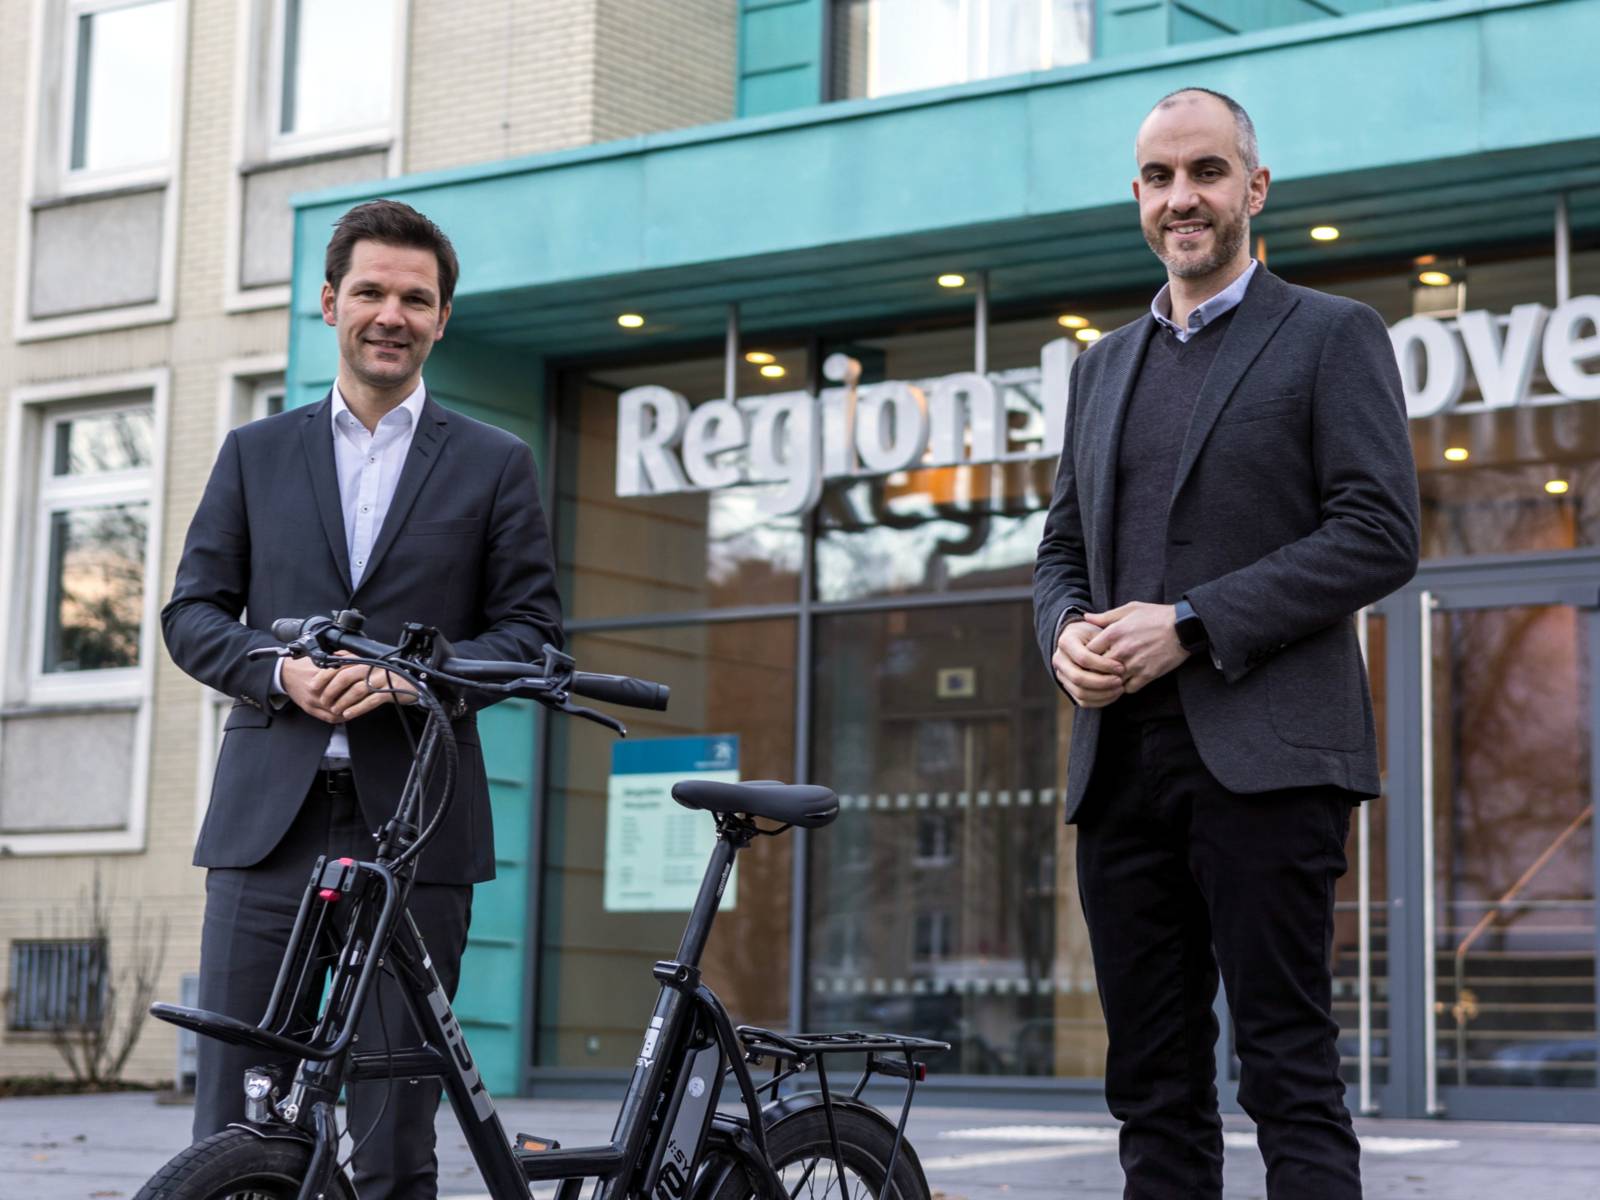 Regionspräsident Steffen Krach (links) und Oberbürgermeister Belit Onay (rechts) stehen vor dem Regionshaus, zwischen ihnen steht ein Elektrisches, zusammenfaltbares Fahrrad.